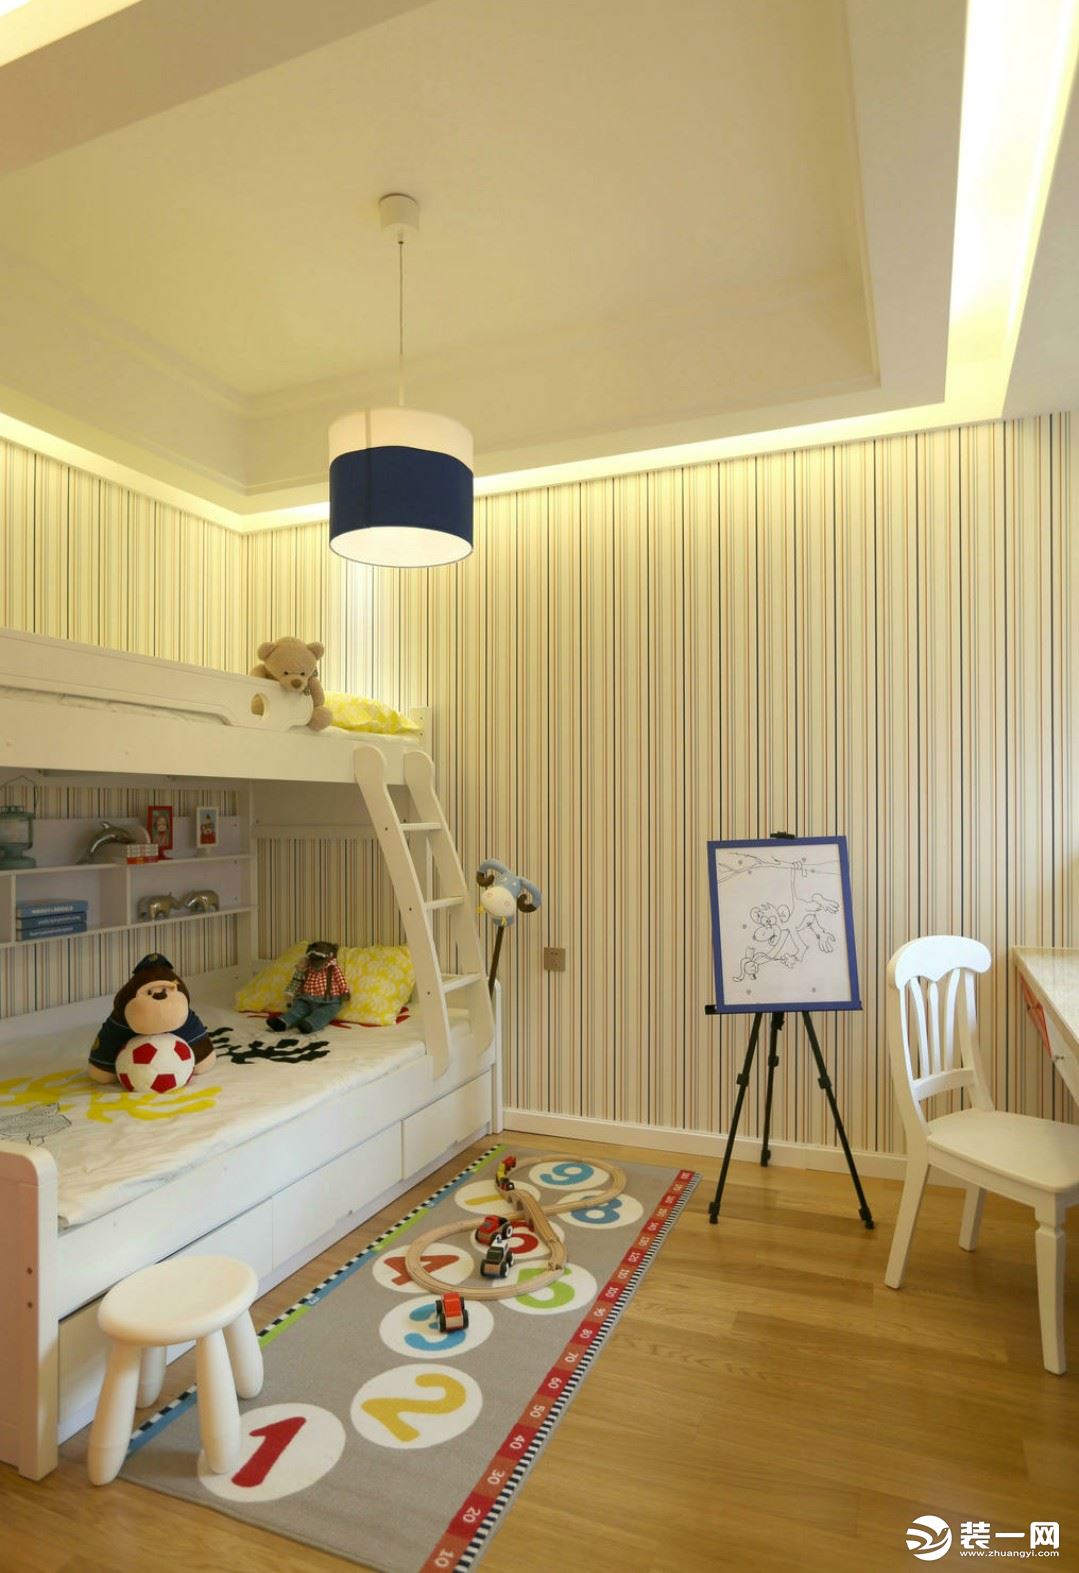 儿童房：儿童房由于空间不是很大，所以运用了大面积的竖条纹壁纸来拉伸整体的空间感。